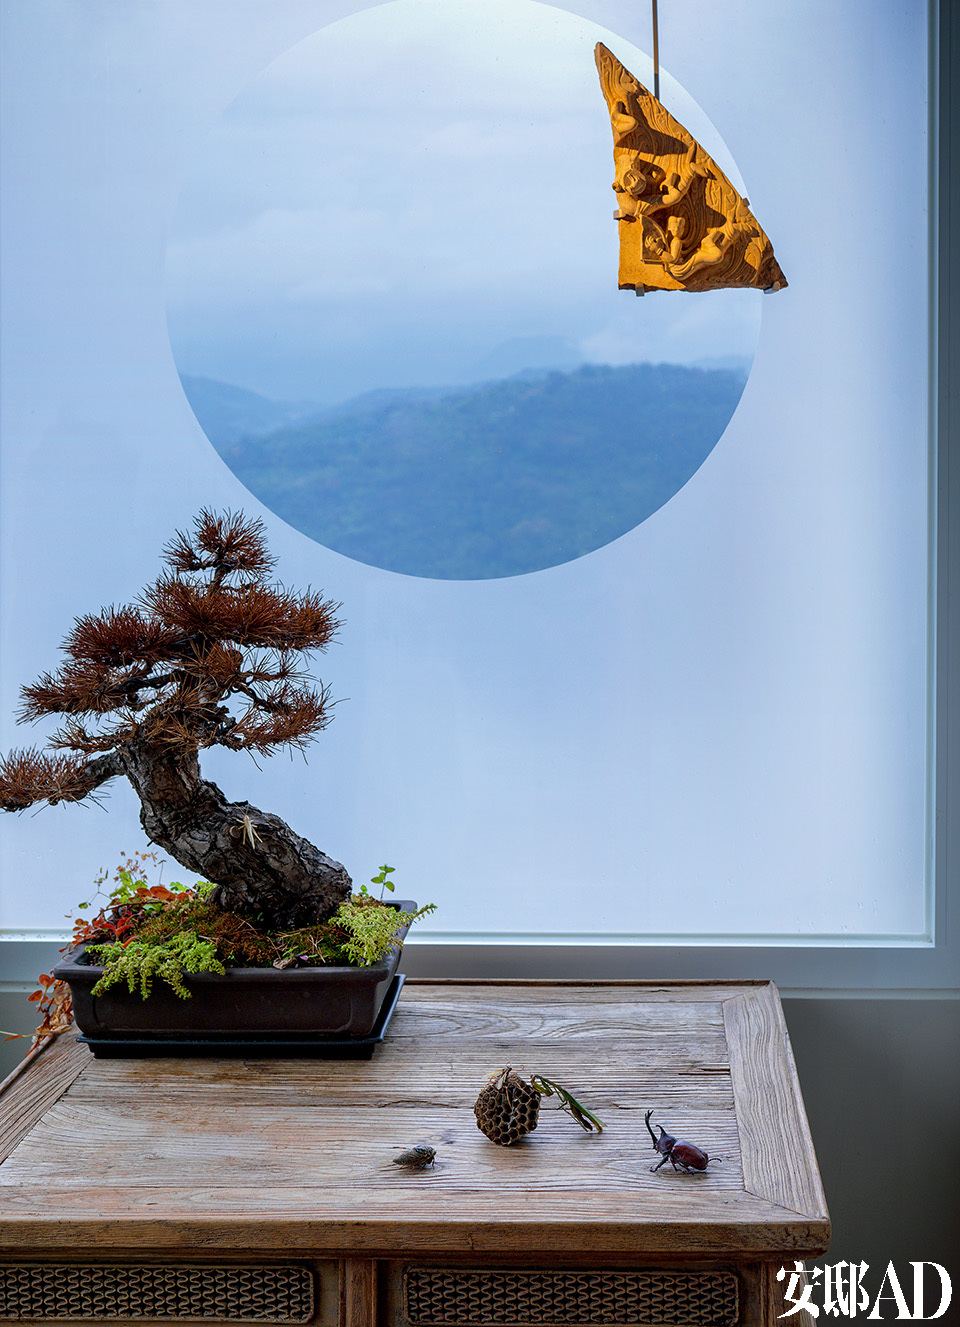 玄关处特意设置了中国园林的圆窗借景的效果，能直视户外的山景变化。明中期的木桌上摆着一个枯松盆景，上悬北齐时代的飞天石刻，以表示对来客的欢迎。